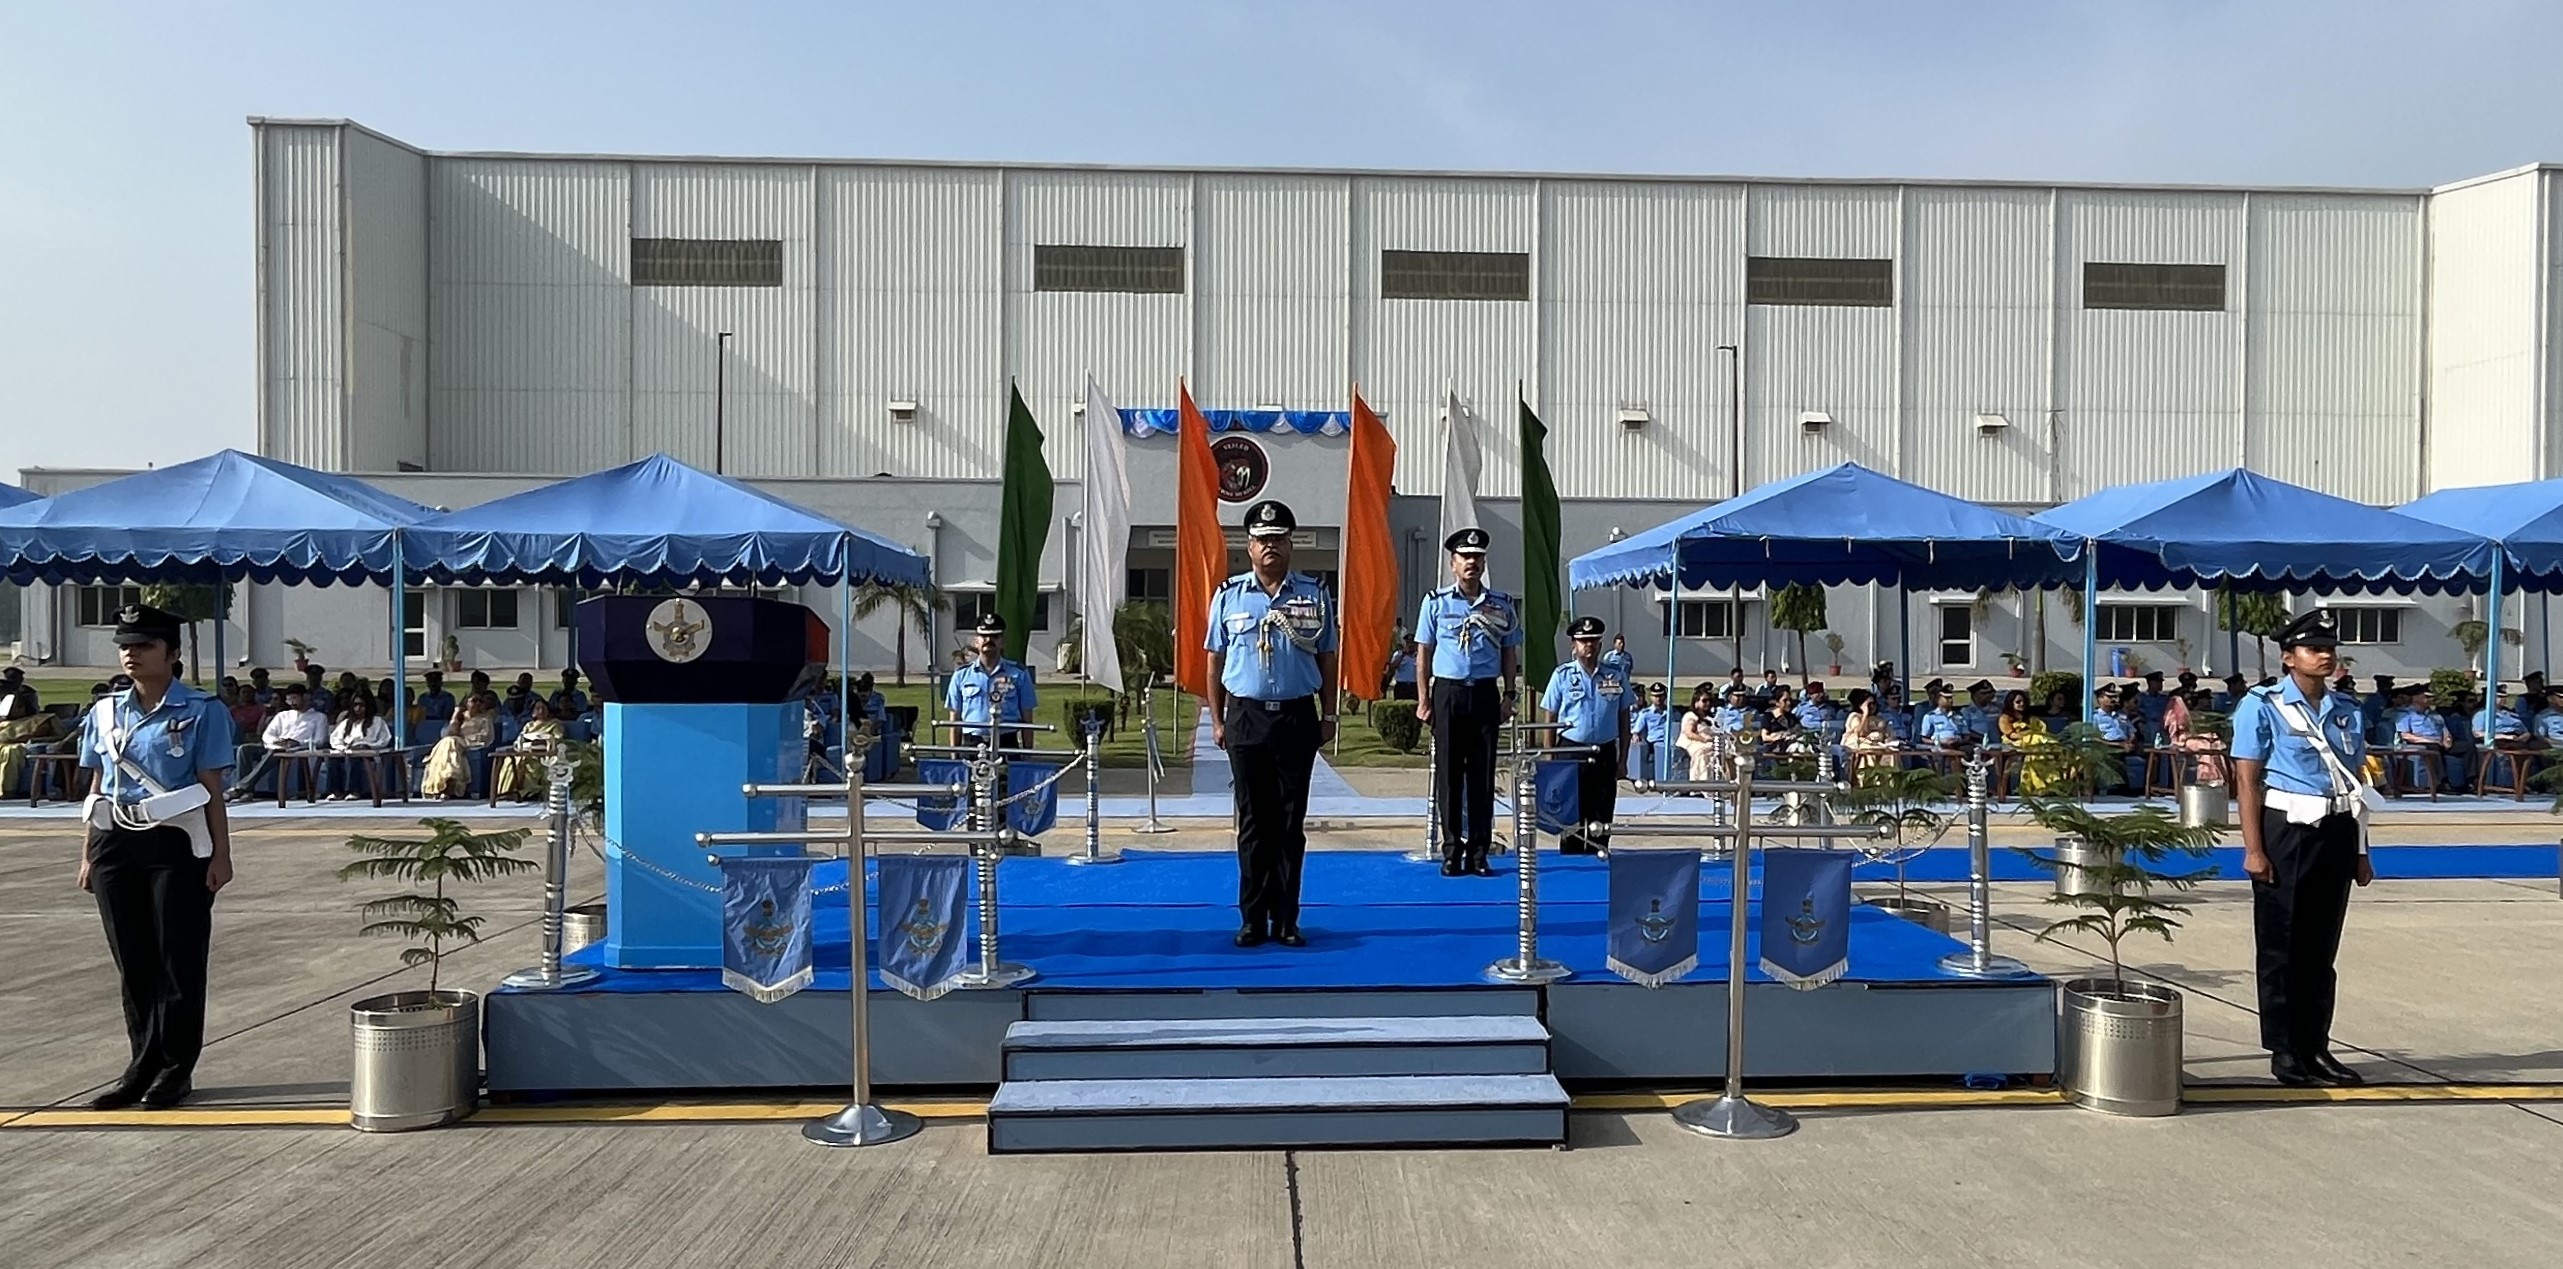  हिंडन वायुसेना स्टेशन की कमान संभाली एयर कमोडोर संजय चोपड़ा ने